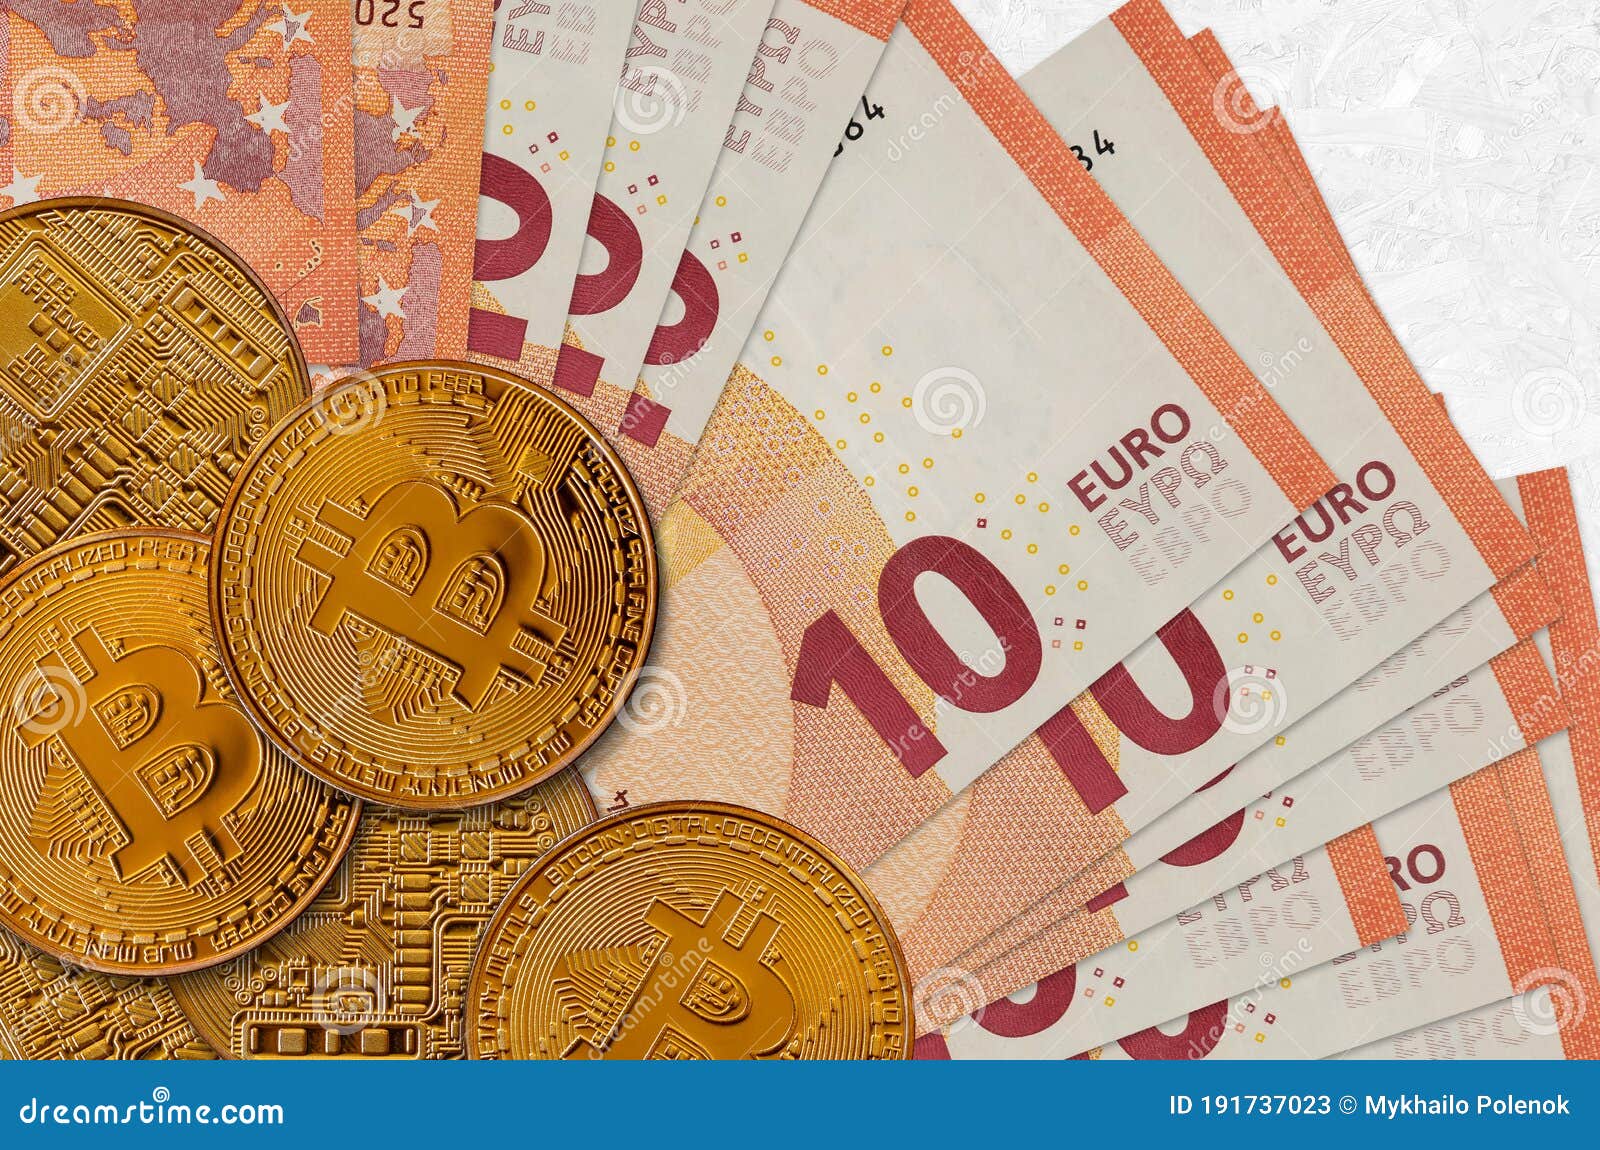 10 euro in bitcoin